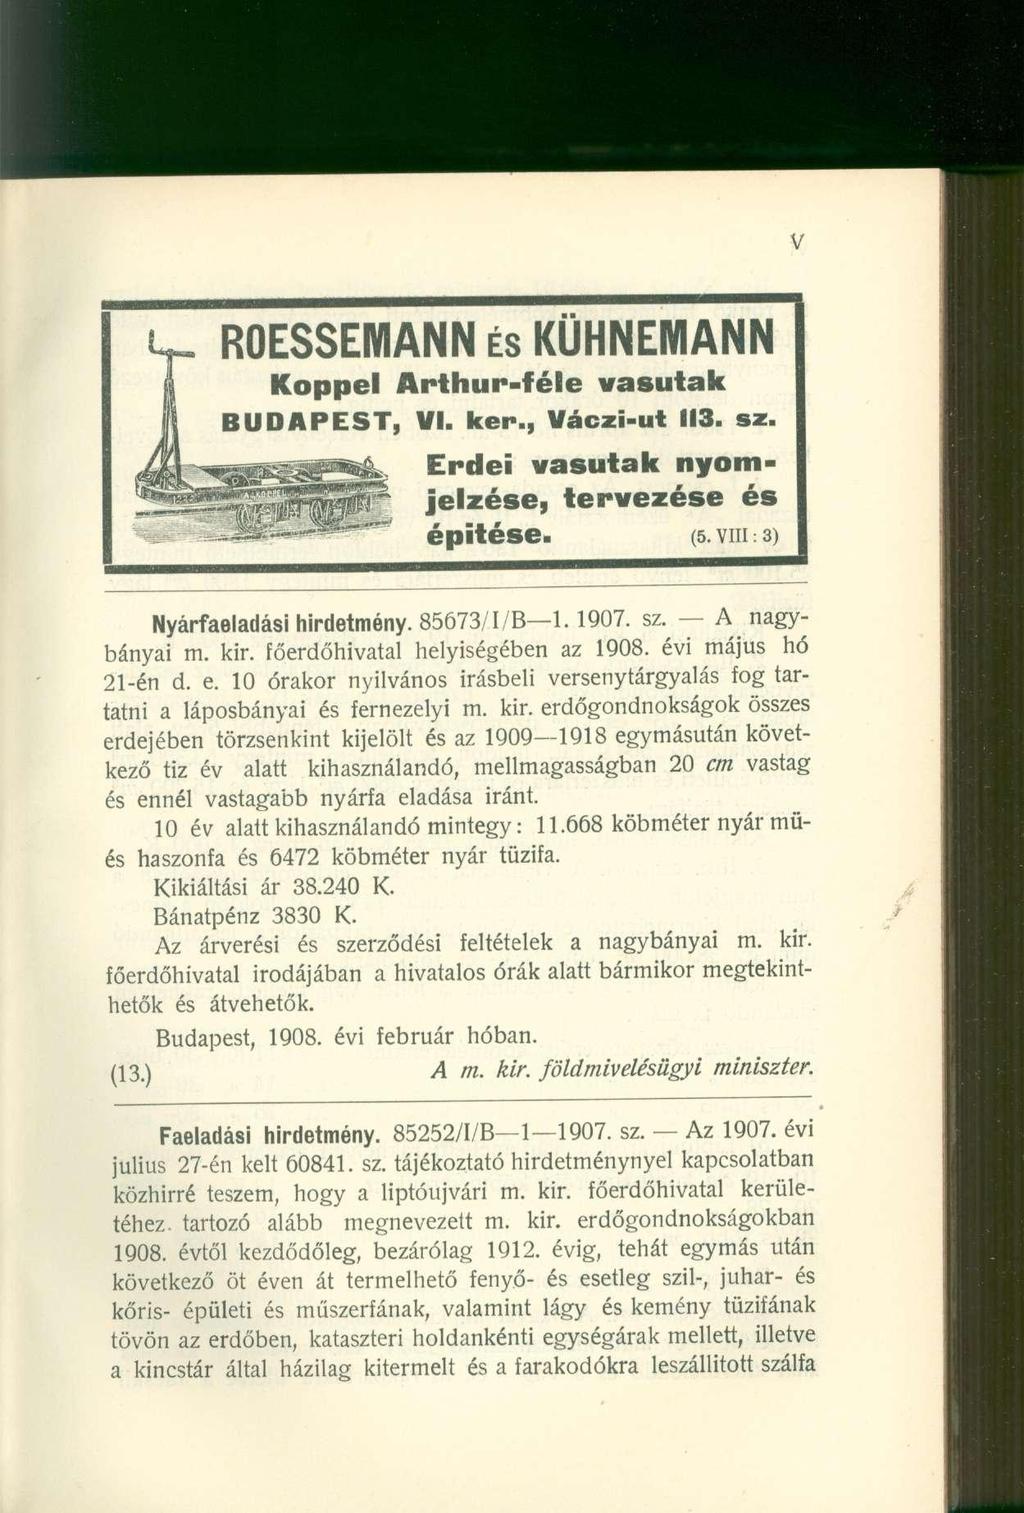 ROESSEMANN éskühnemann Koppéi Arthur-féle vasutak BUDAPEST, VI. ker., Váczi-ut 113. sz. g^b^a^js^ Erdei vasutak nyom- ^ ^ ^ ^ ^ S f jelzése, tervezése és -1 - -^=***" épitése. (5.